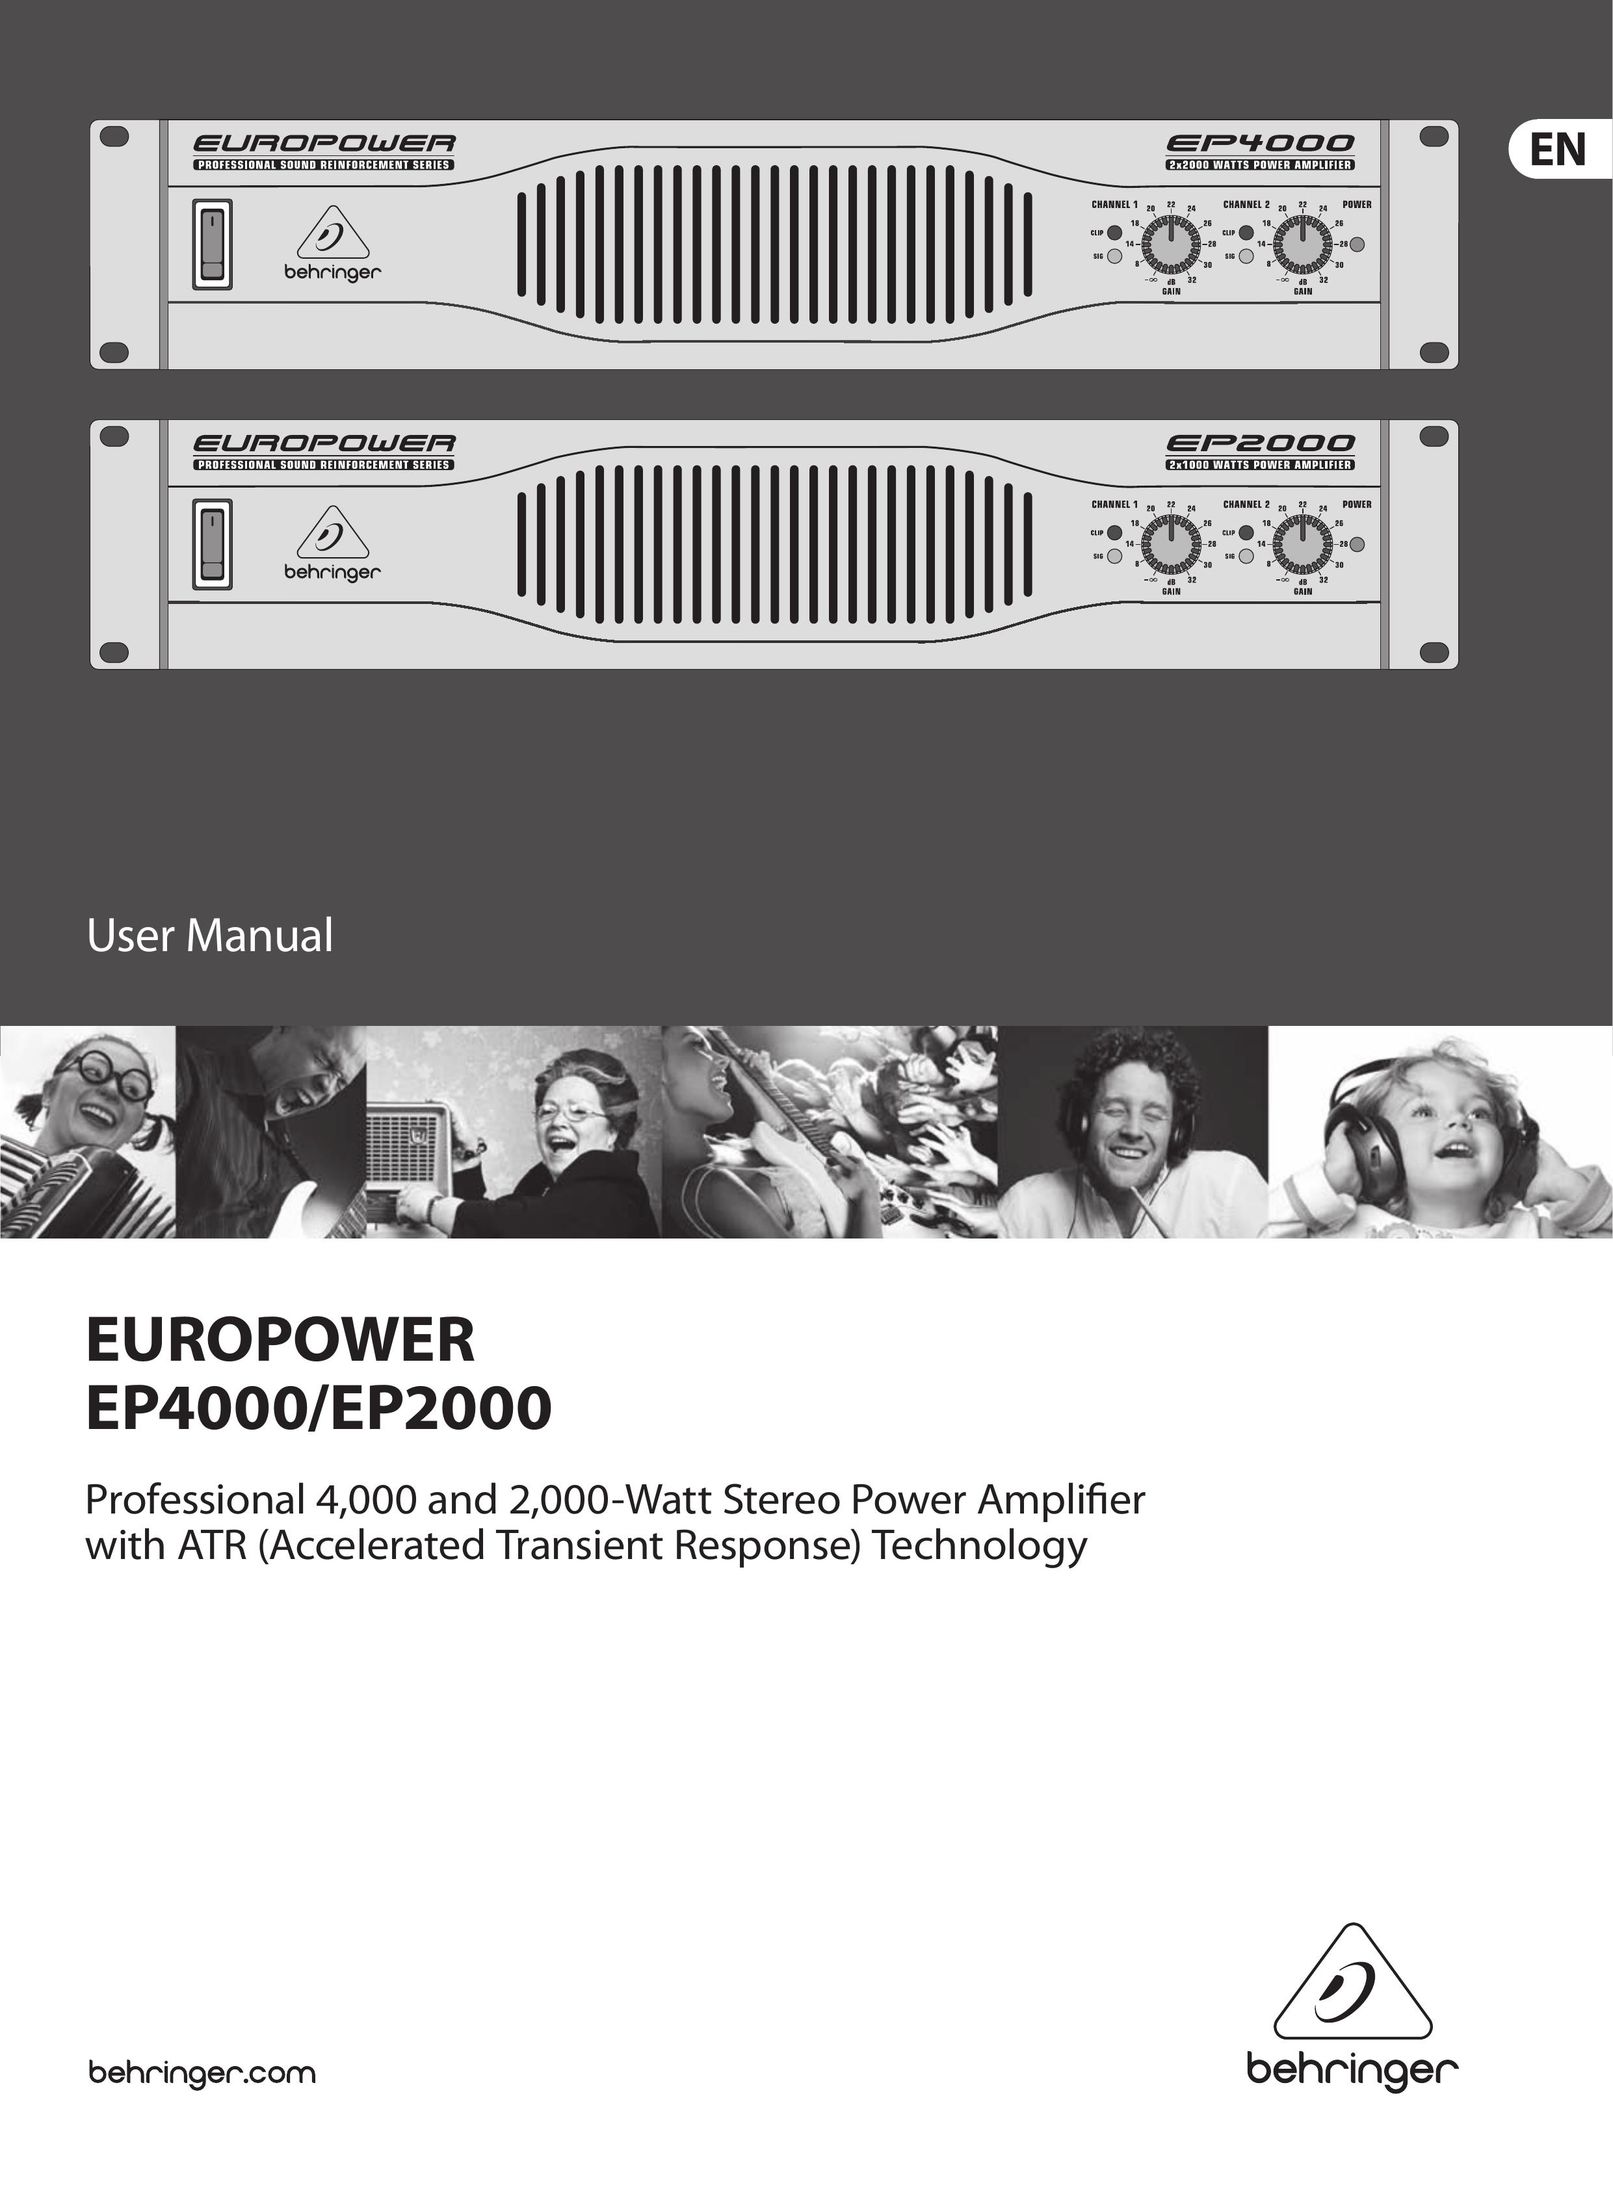 Behringer EP2000 Stereo Amplifier User Manual